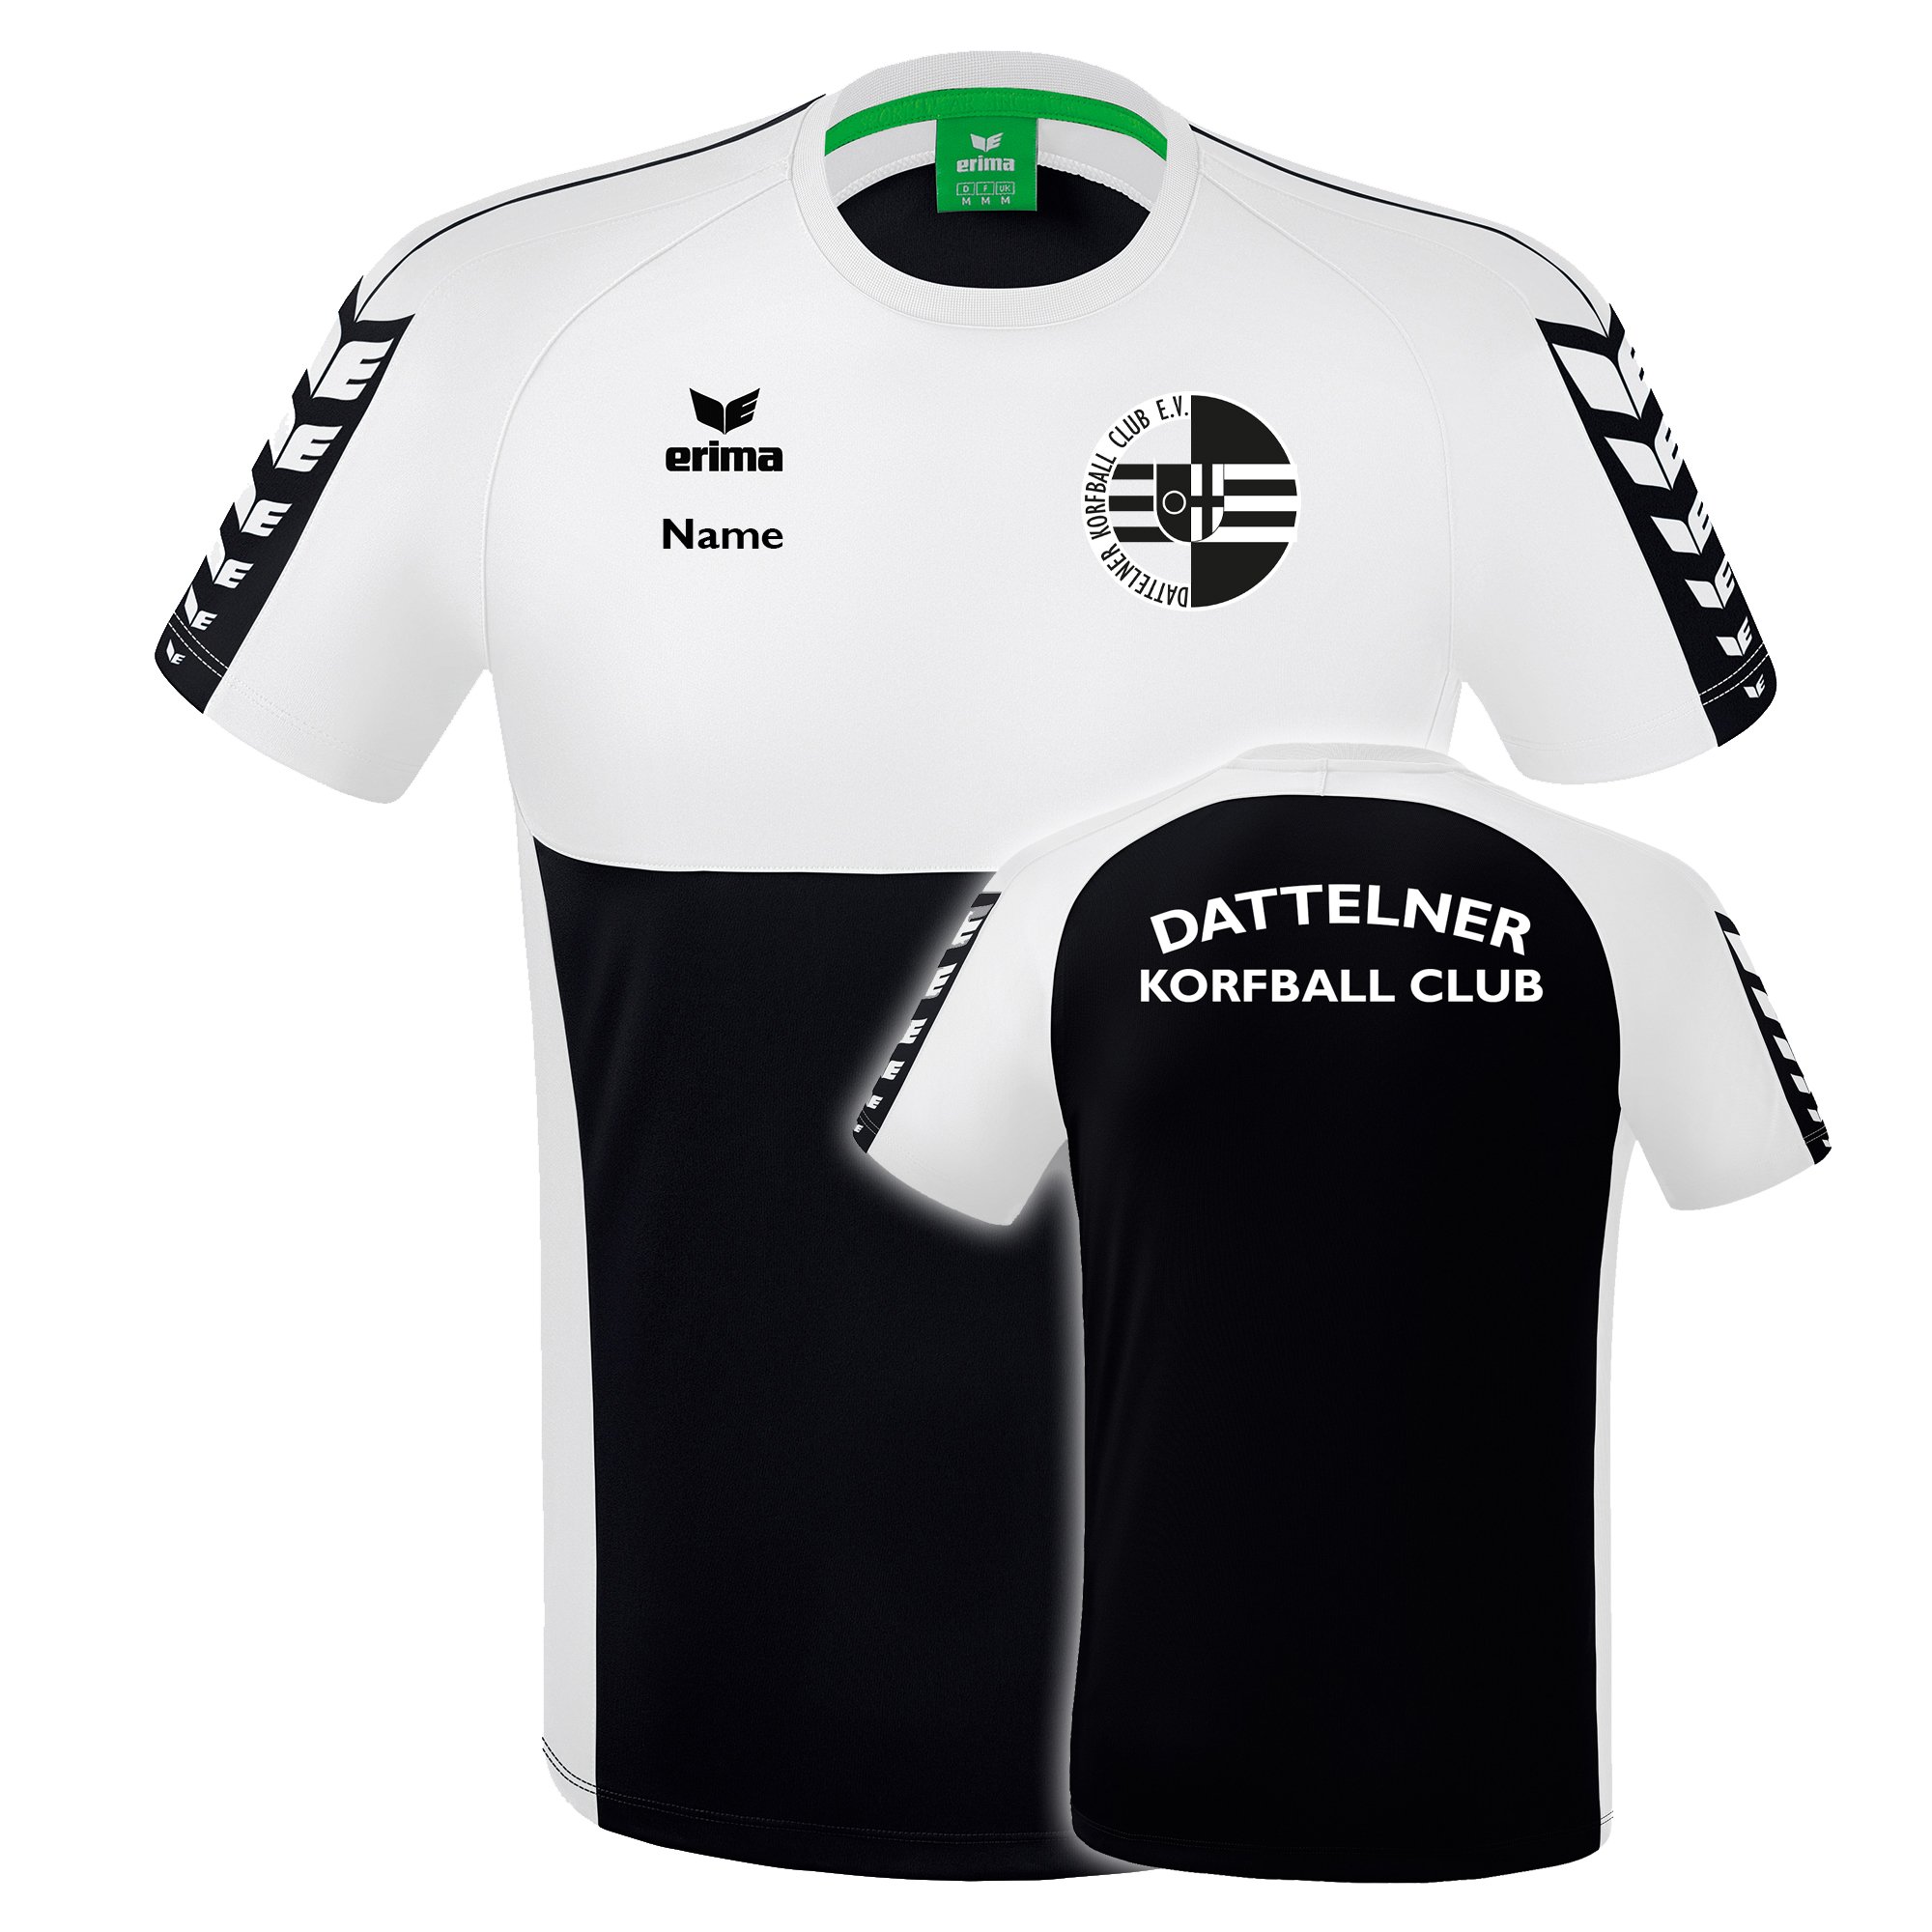 Dattelner Korfball Club T-Shirt